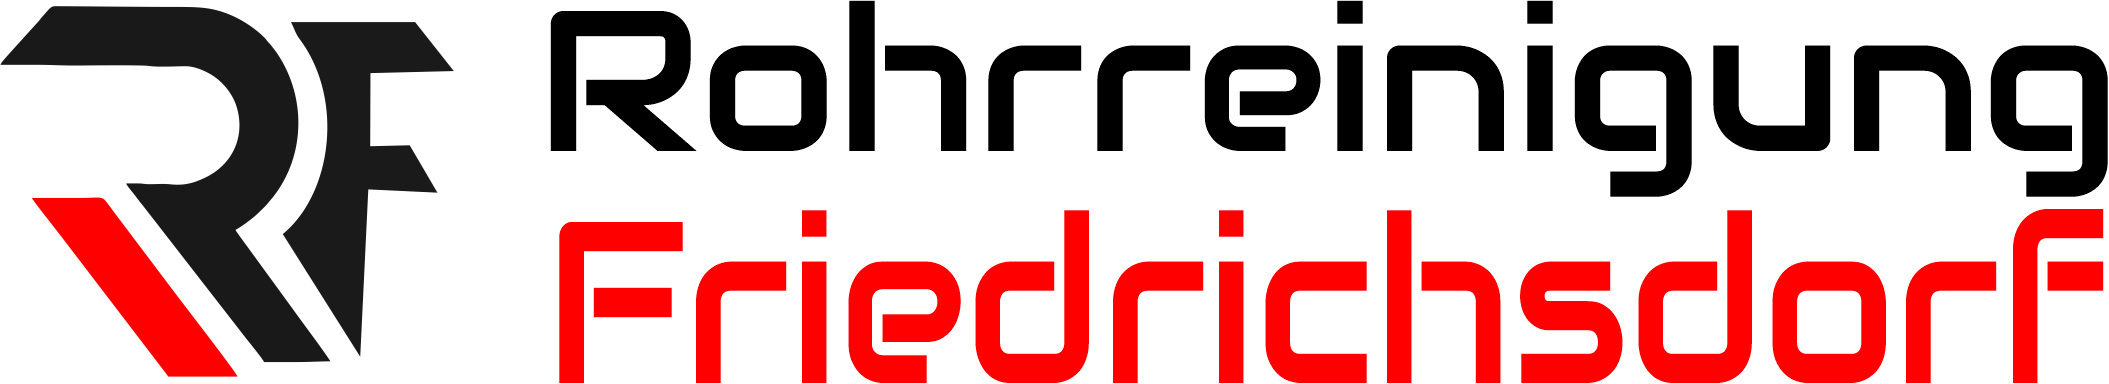 Rohrreinigung Friedrichsdorf Logo